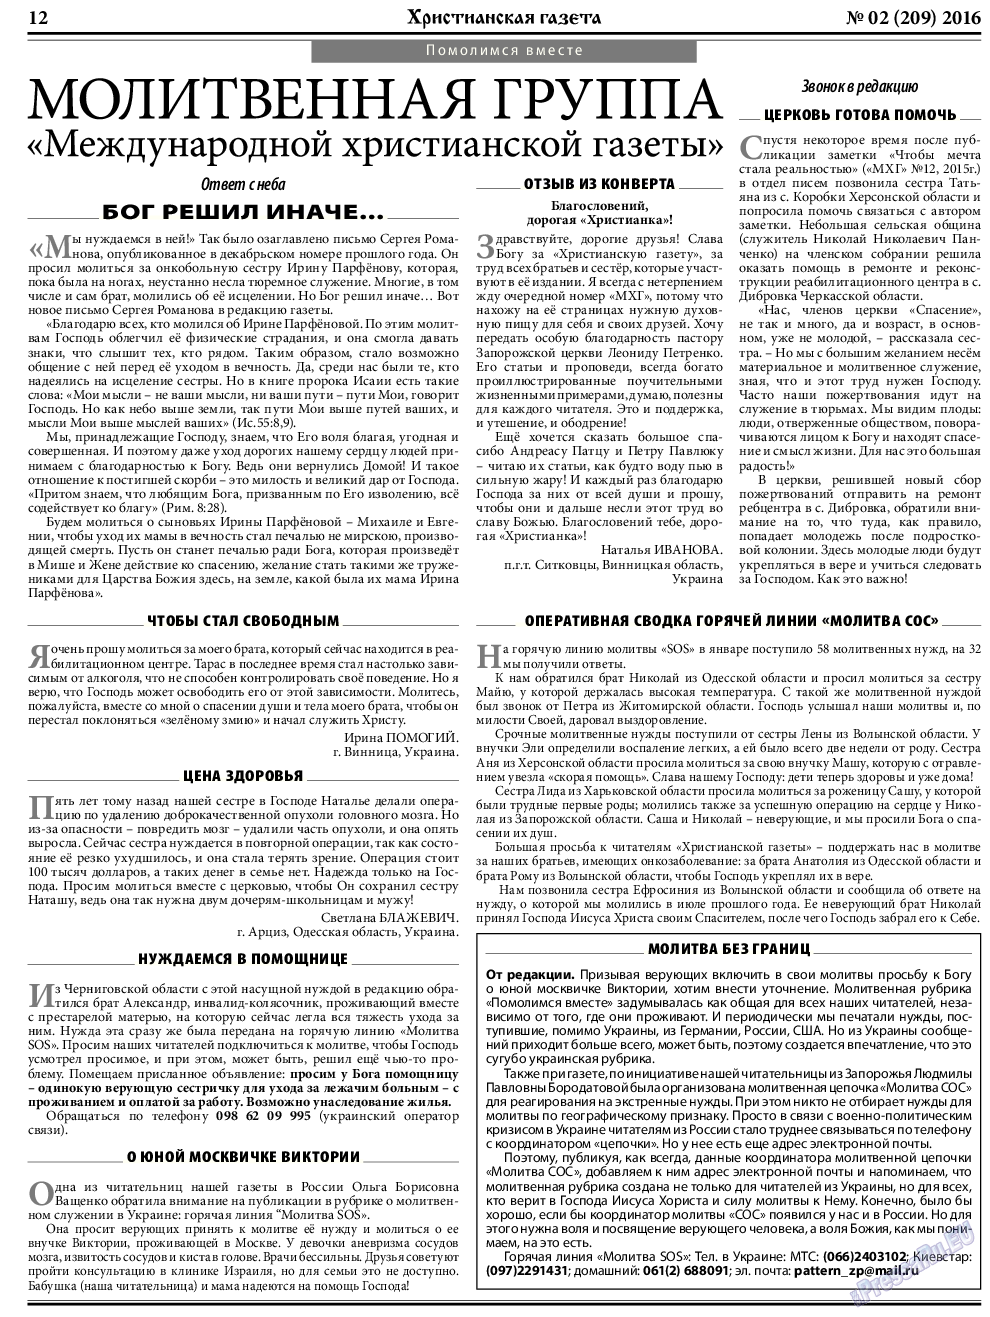 Христианская газета, газета. 2016 №2 стр.12